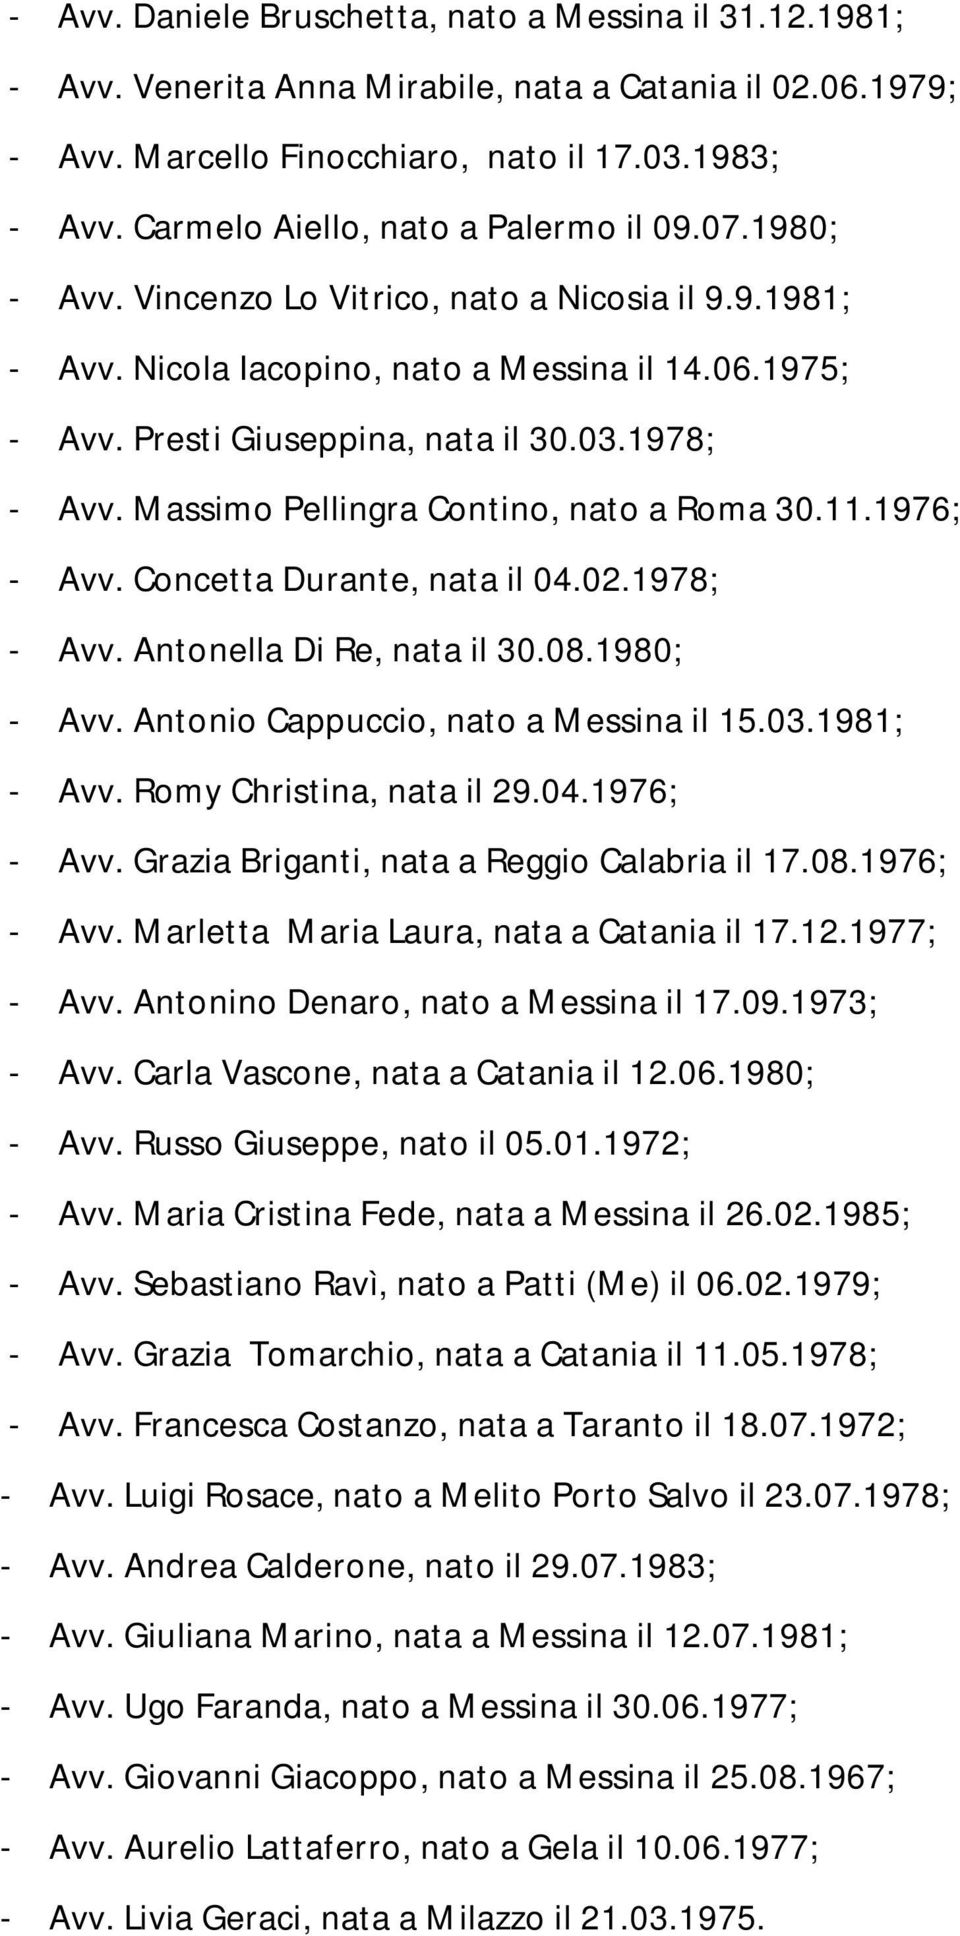 1978; - Avv. Massimo Pellingra Contino, nato a Roma 30.11.1976; - Avv. Concetta Durante, nata il 04.02.1978; - Avv. Antonella Di Re, nata il 30.08.1980; - Avv. Antonio Cappuccio, nato a Messina il 15.